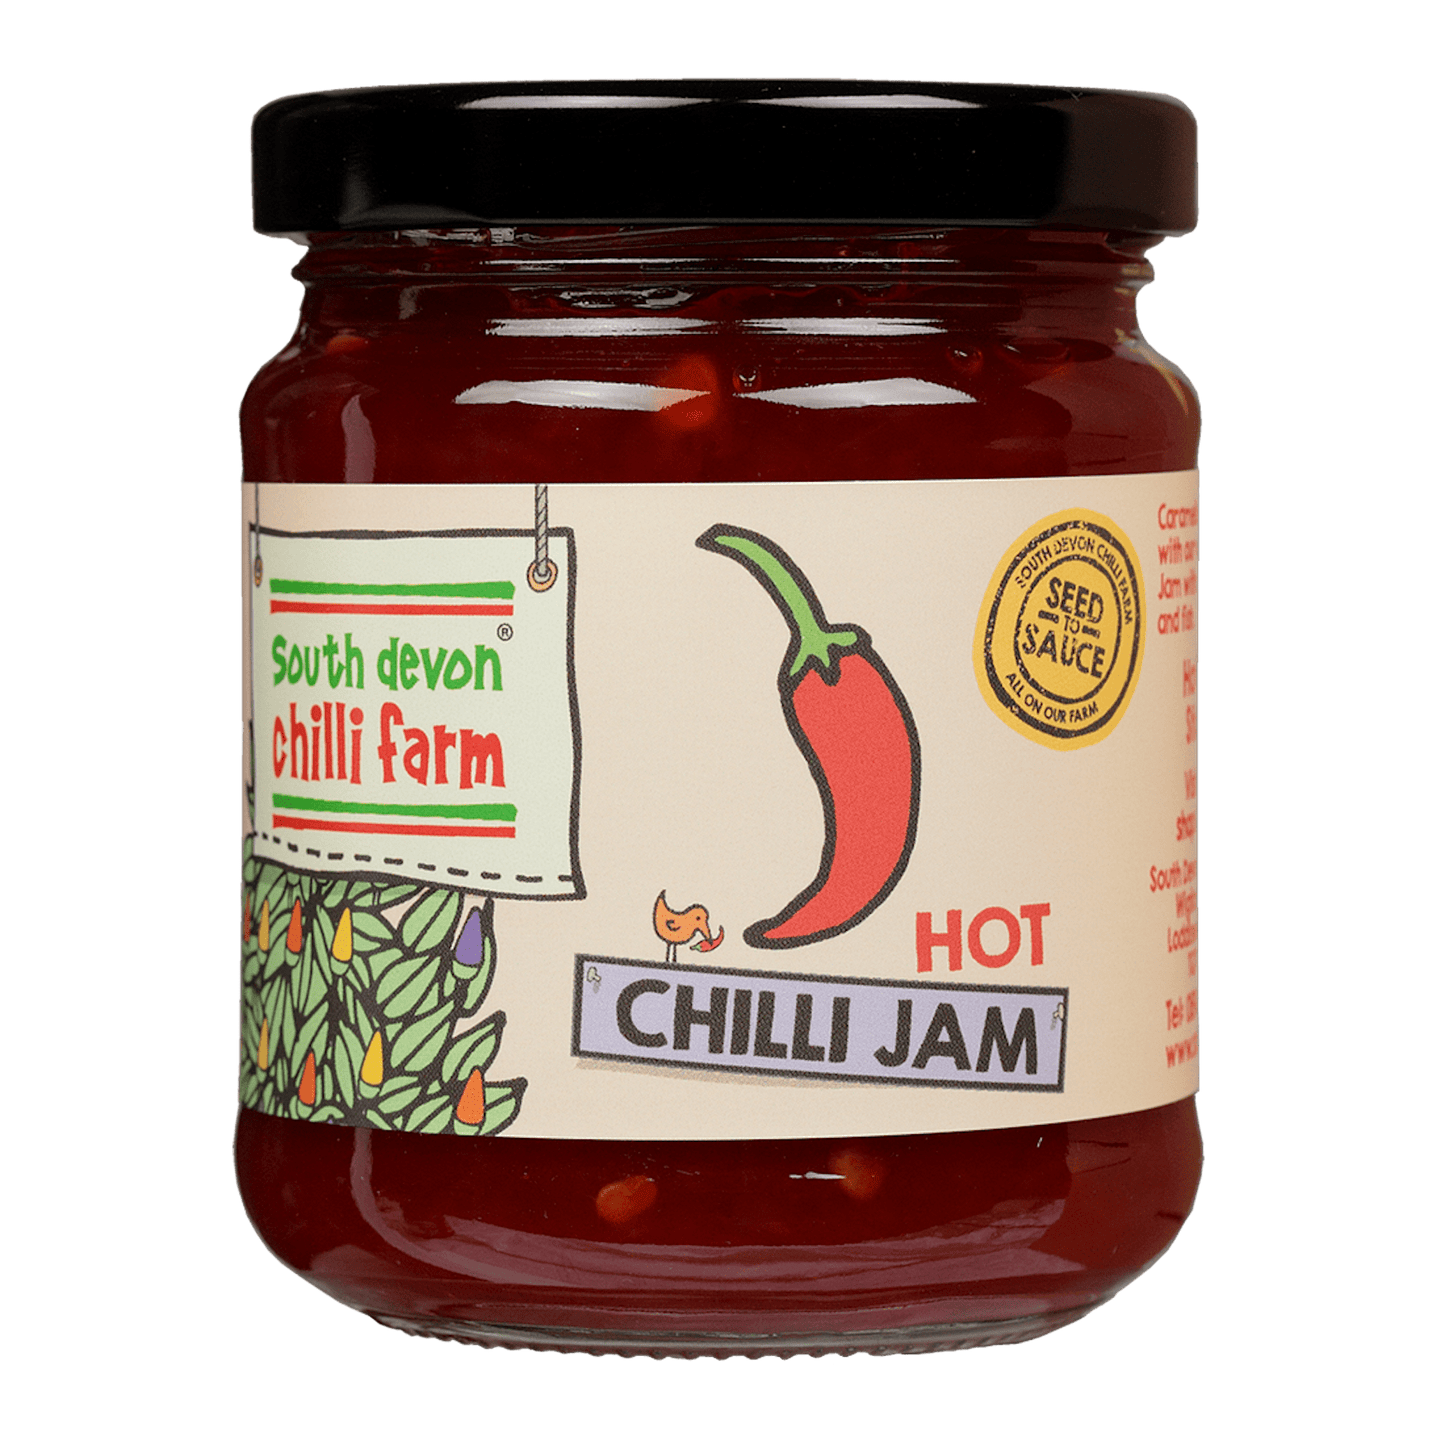 Hot Chilli Jam 250g South Devon Chilli Farm